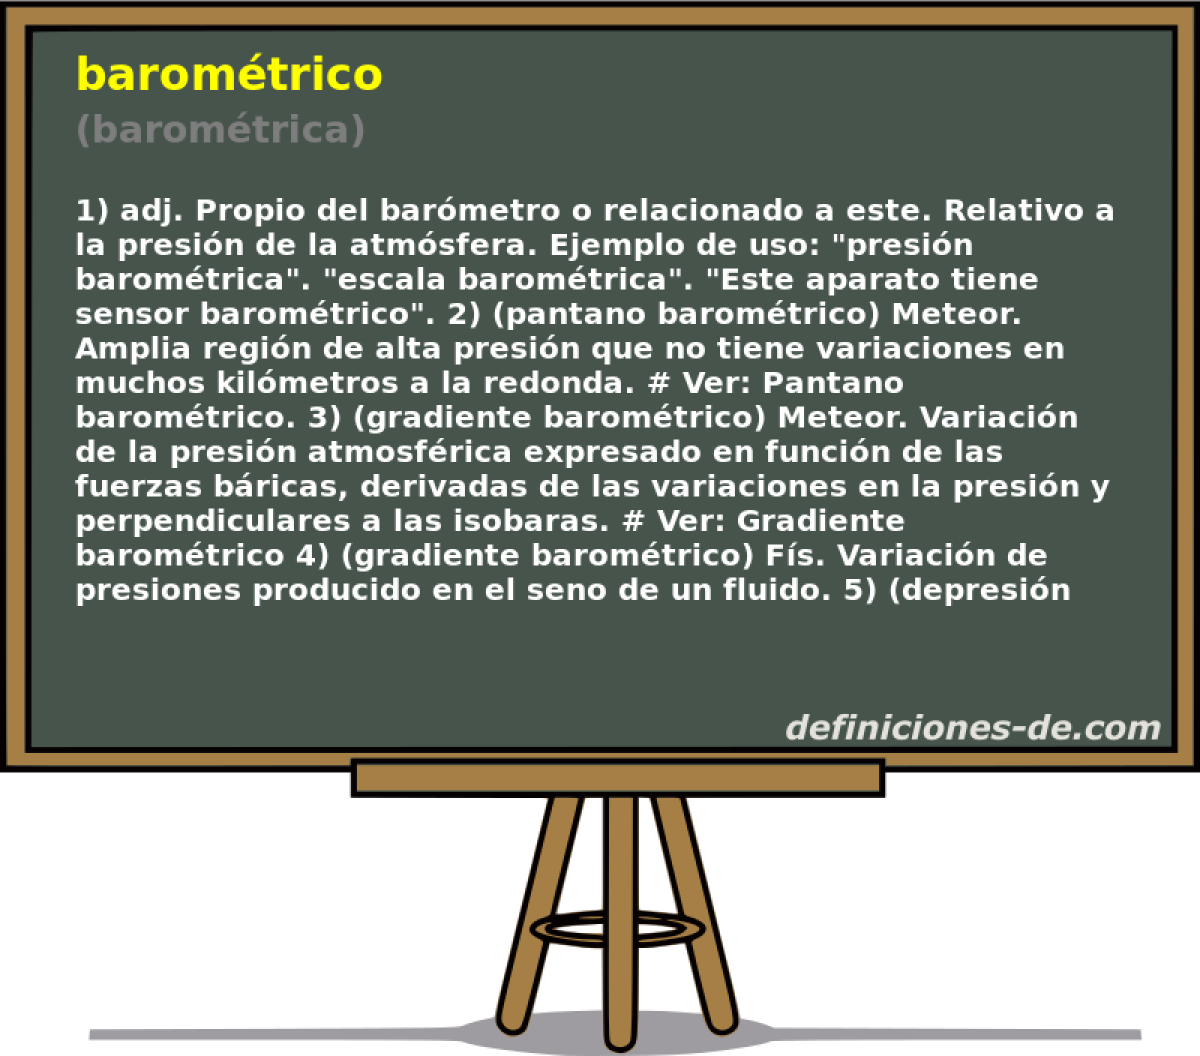 baromtrico (baromtrica)